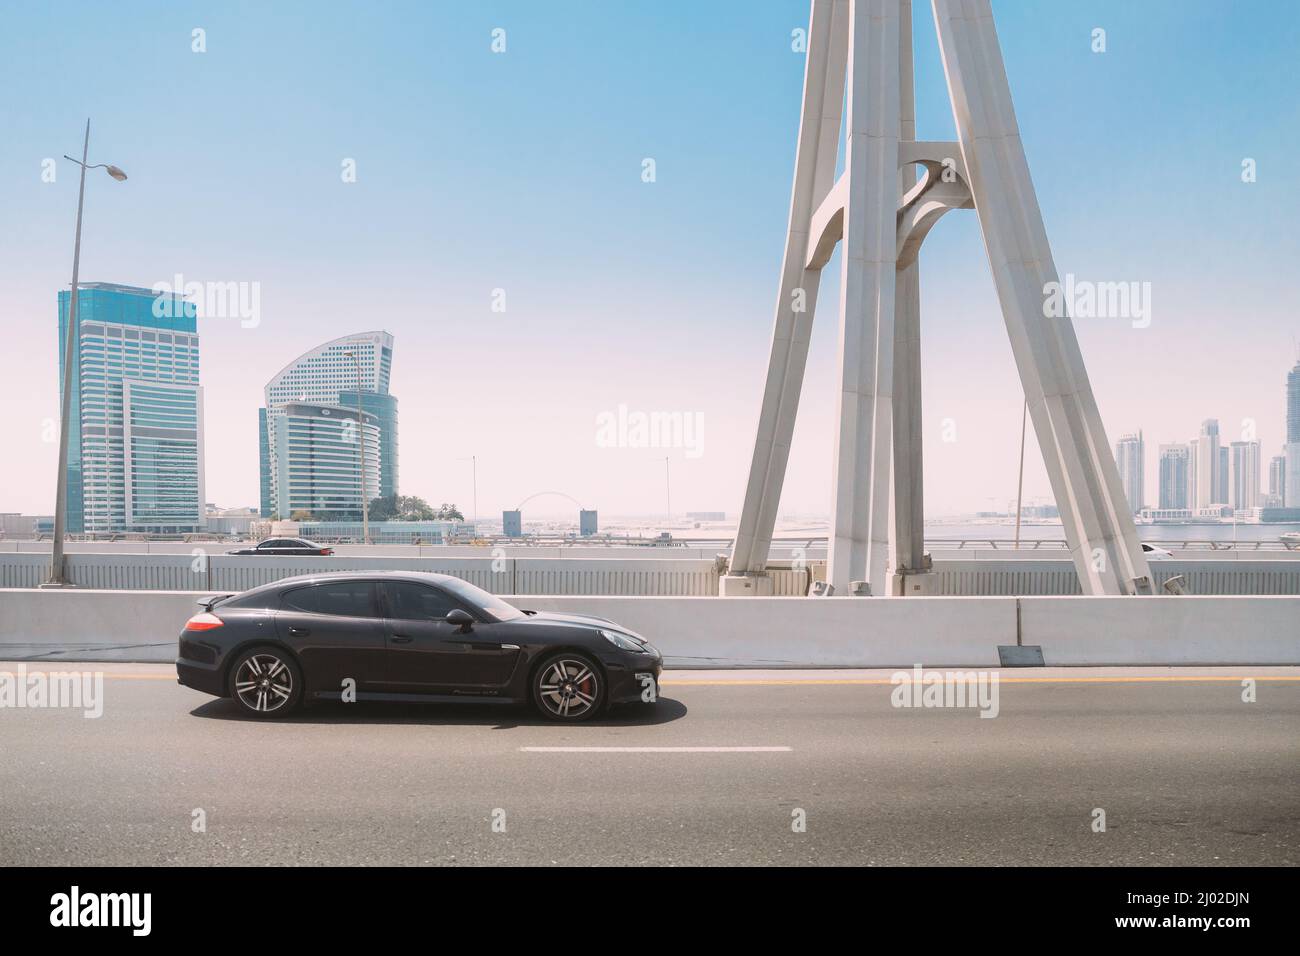 Dubai, Emirati Arabi Uniti - 28 maggio 2021: Black Porsche Panamera auto in movimento in città strada. Porsche Panamera è un'auto di lusso di medie/grandi dimensioni Foto Stock